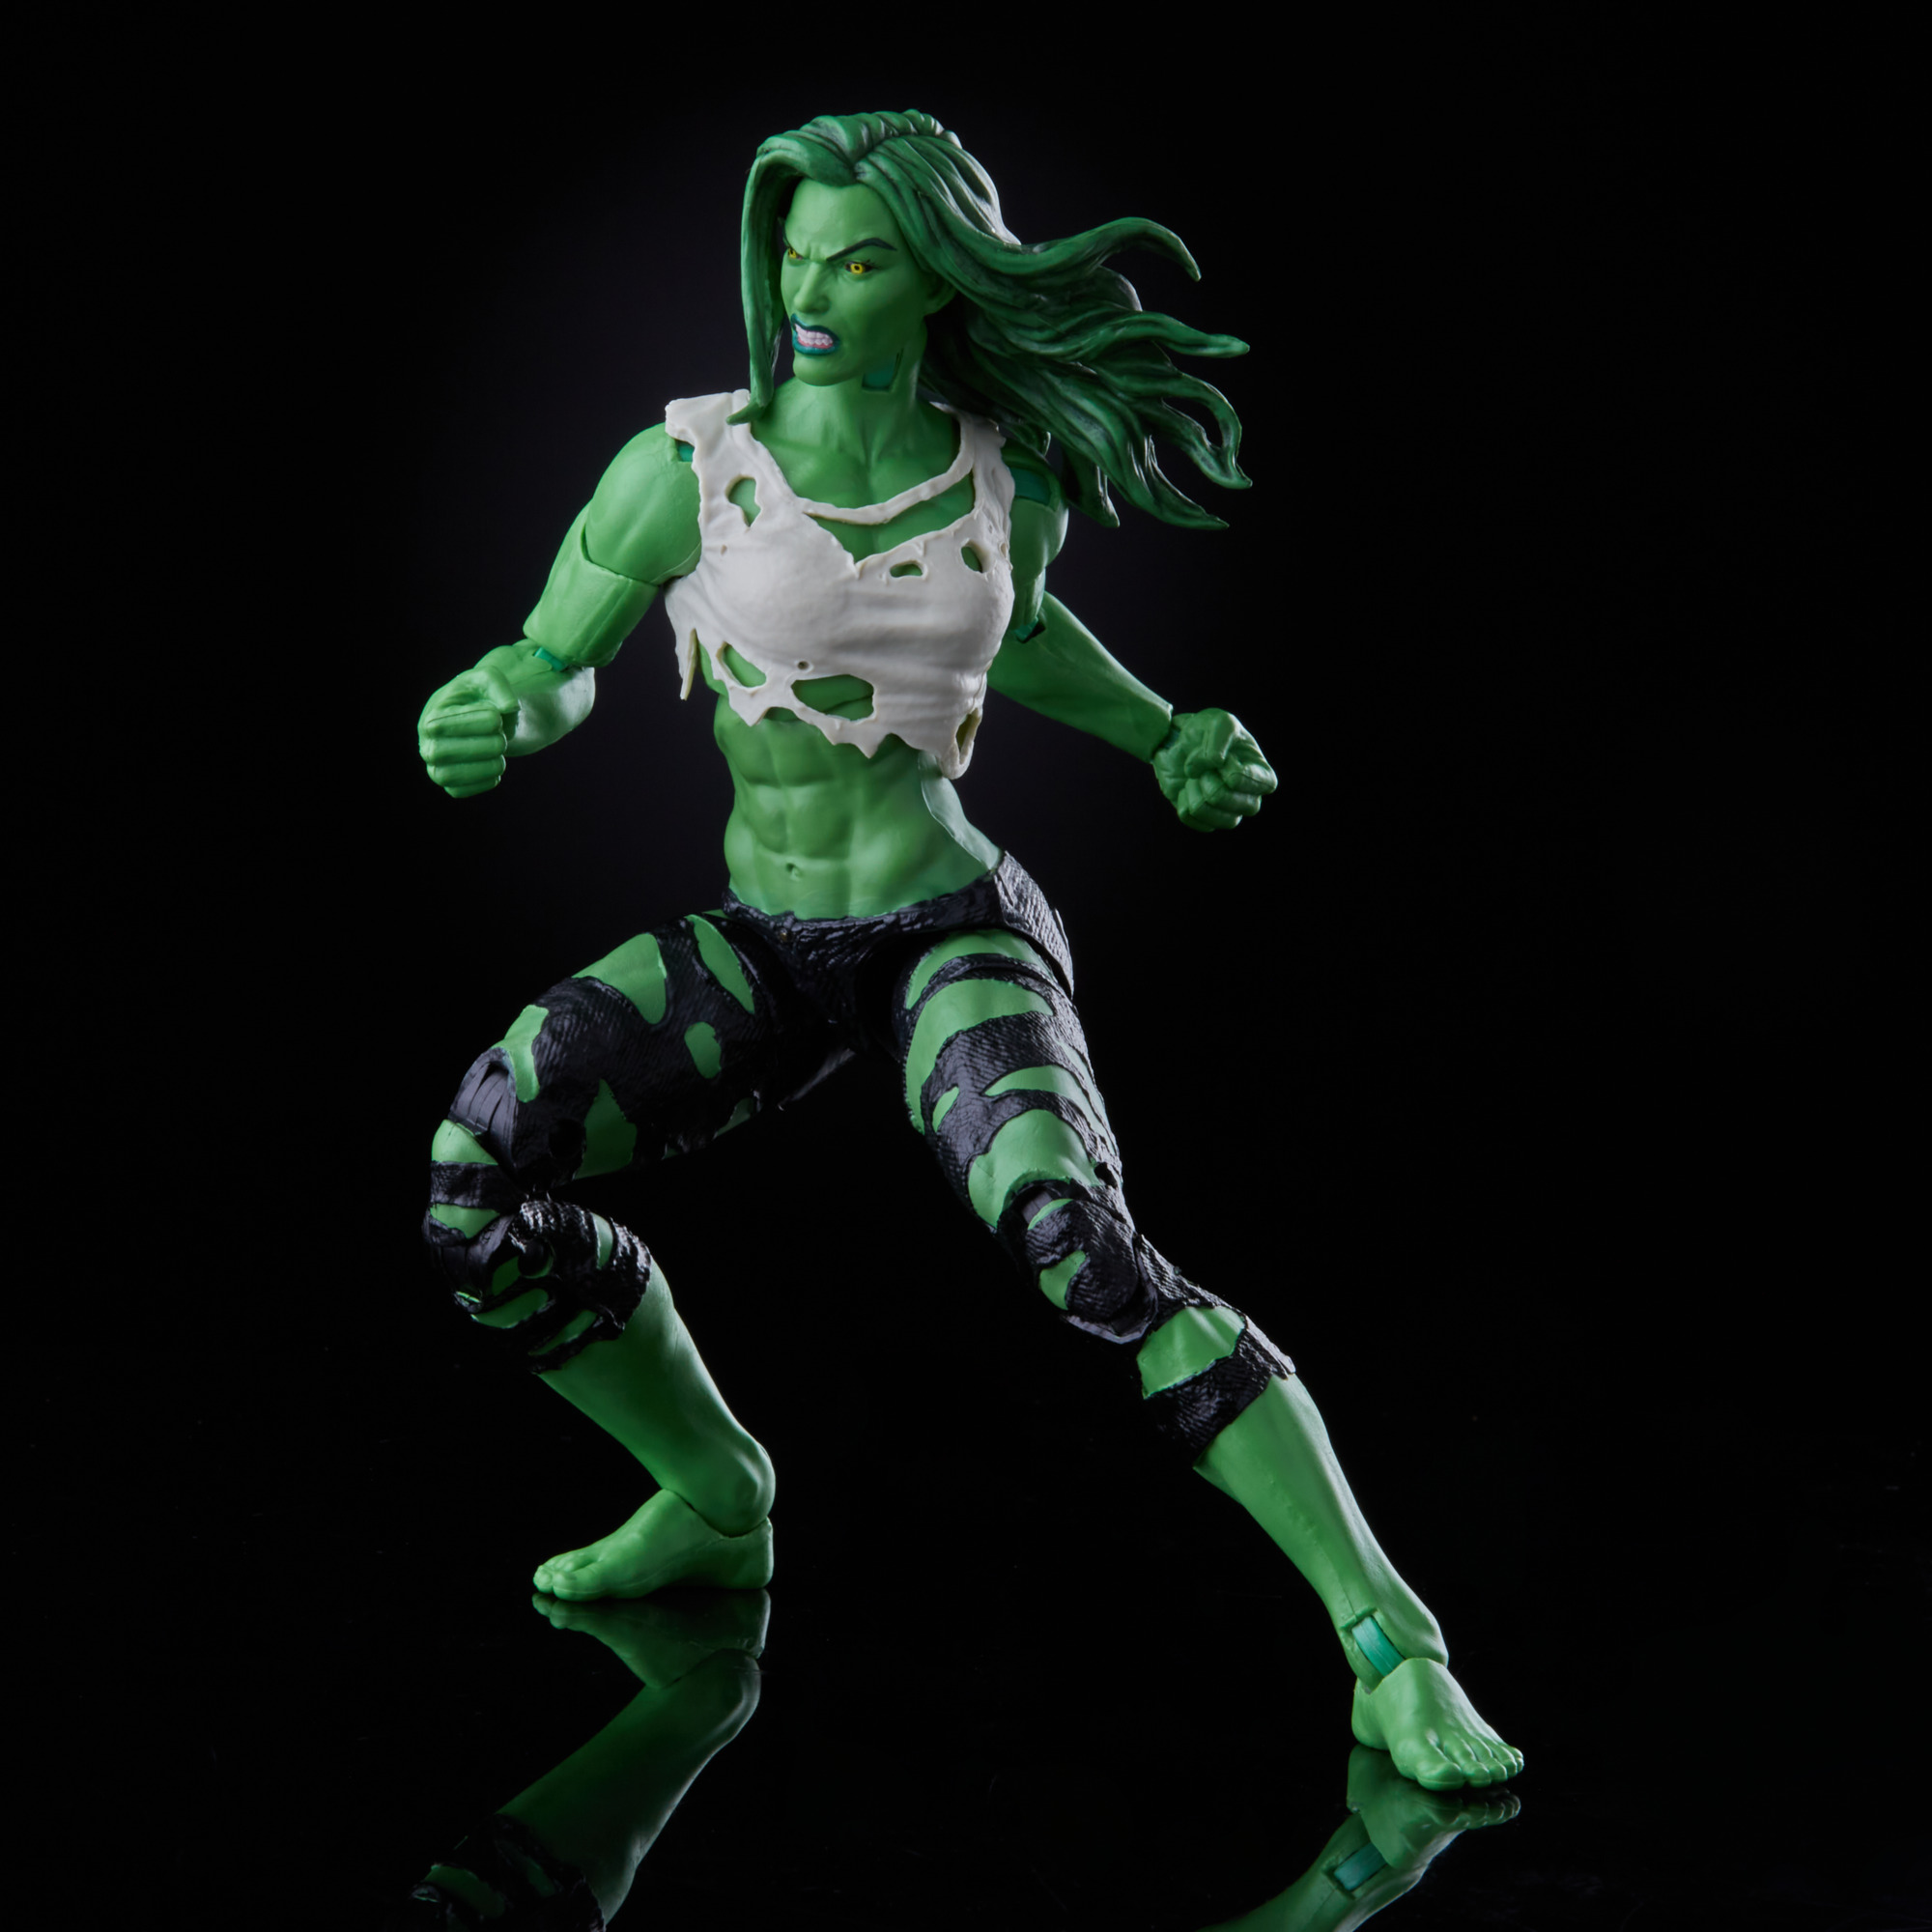 She Hulk Marvel Legends Action Figure Pre Order Info Images